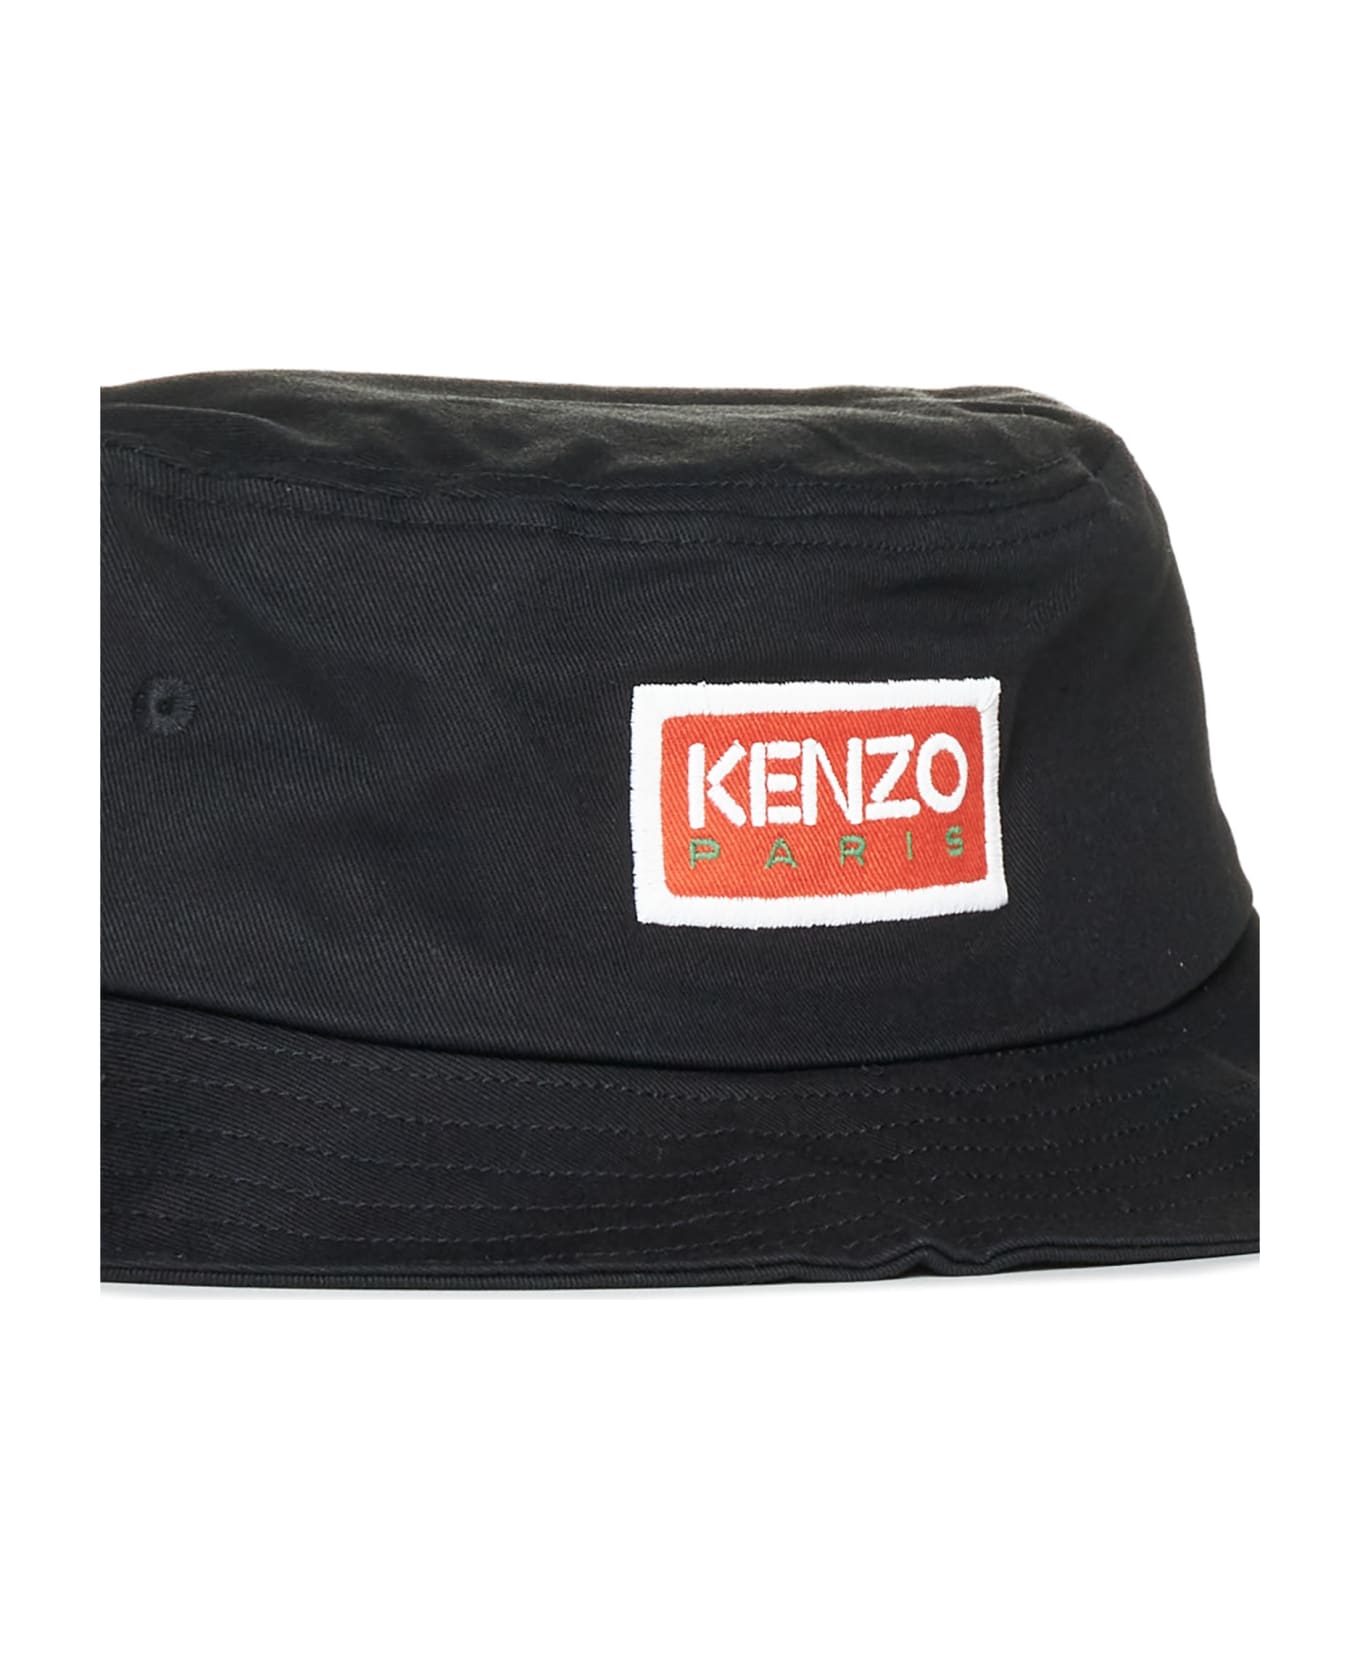 Kenzo Bucket Hat With Logo - Black